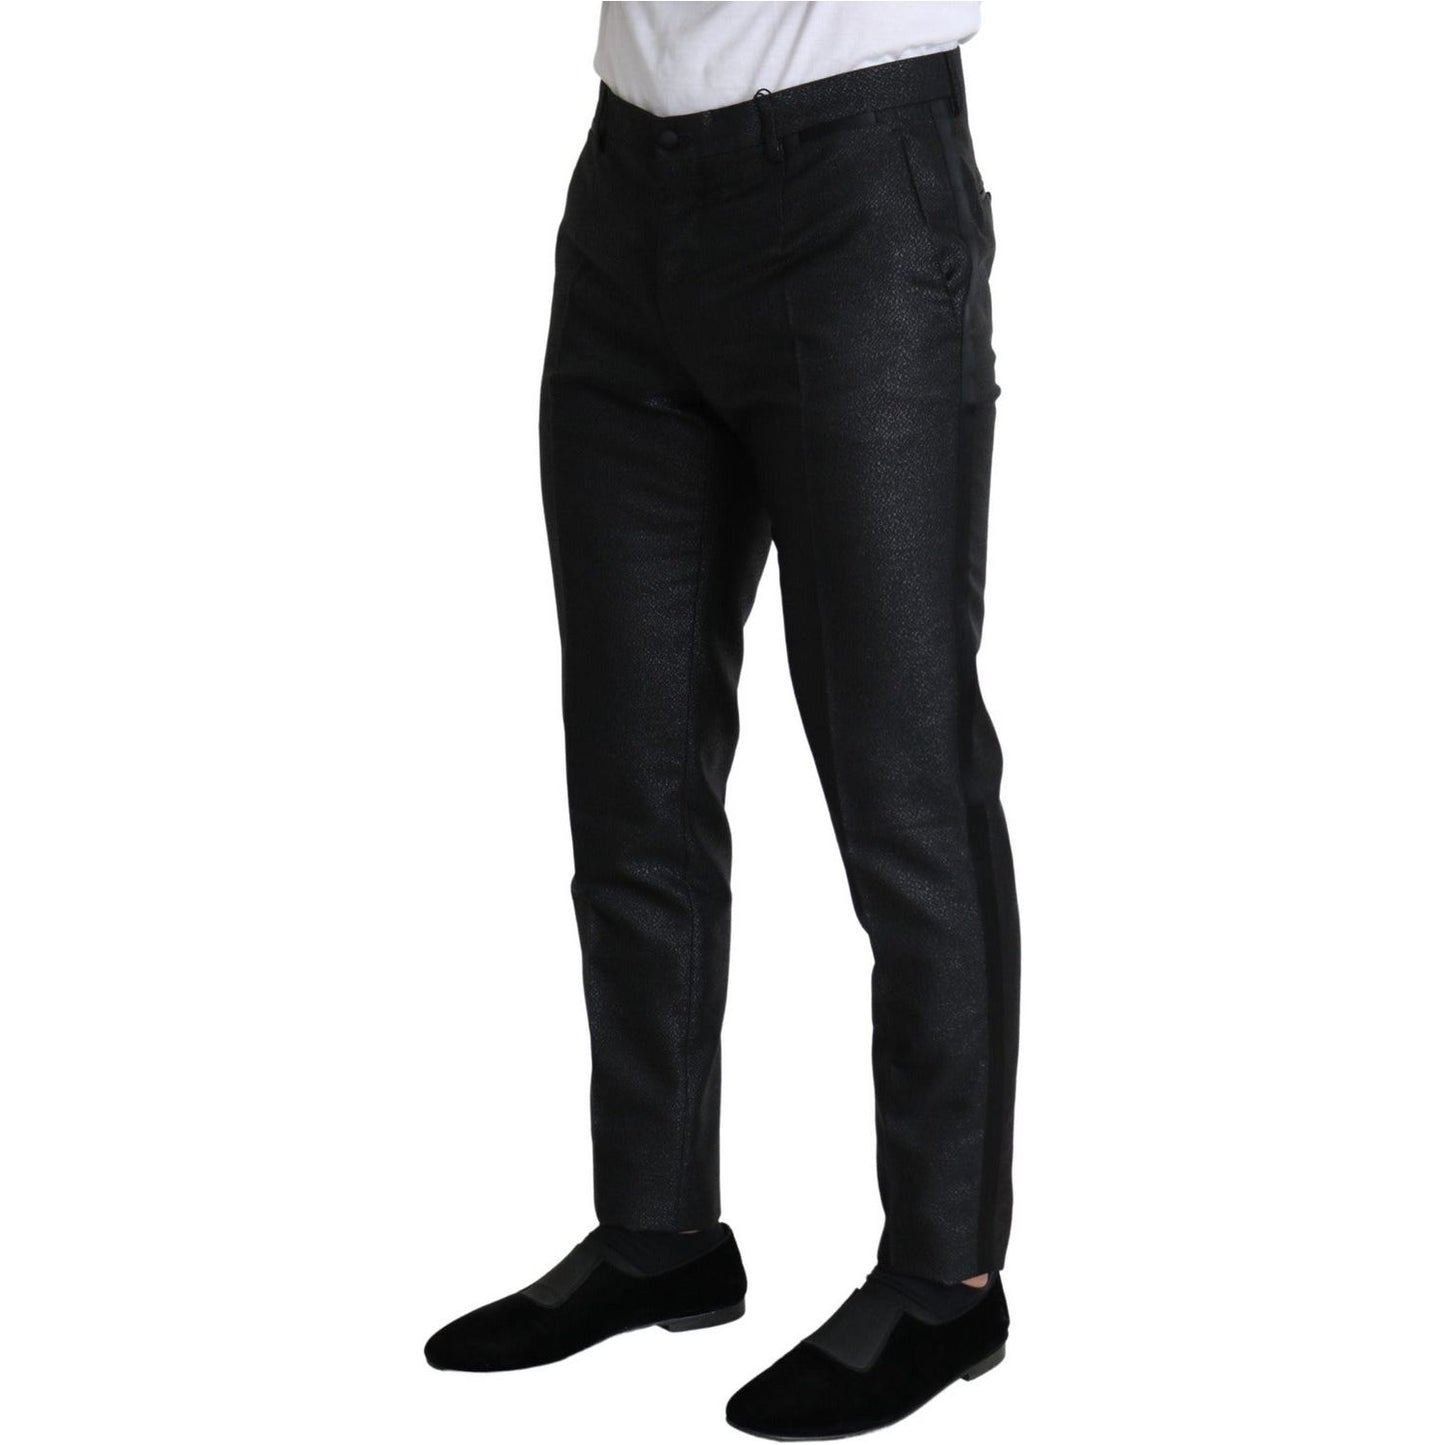 Dolce & Gabbana Elegant Metallic Black Dress Pants black-metallic-skinny-trouser-dress Jeans & Pants IMG_2239-scaled-a8ca3215-e4f.jpg